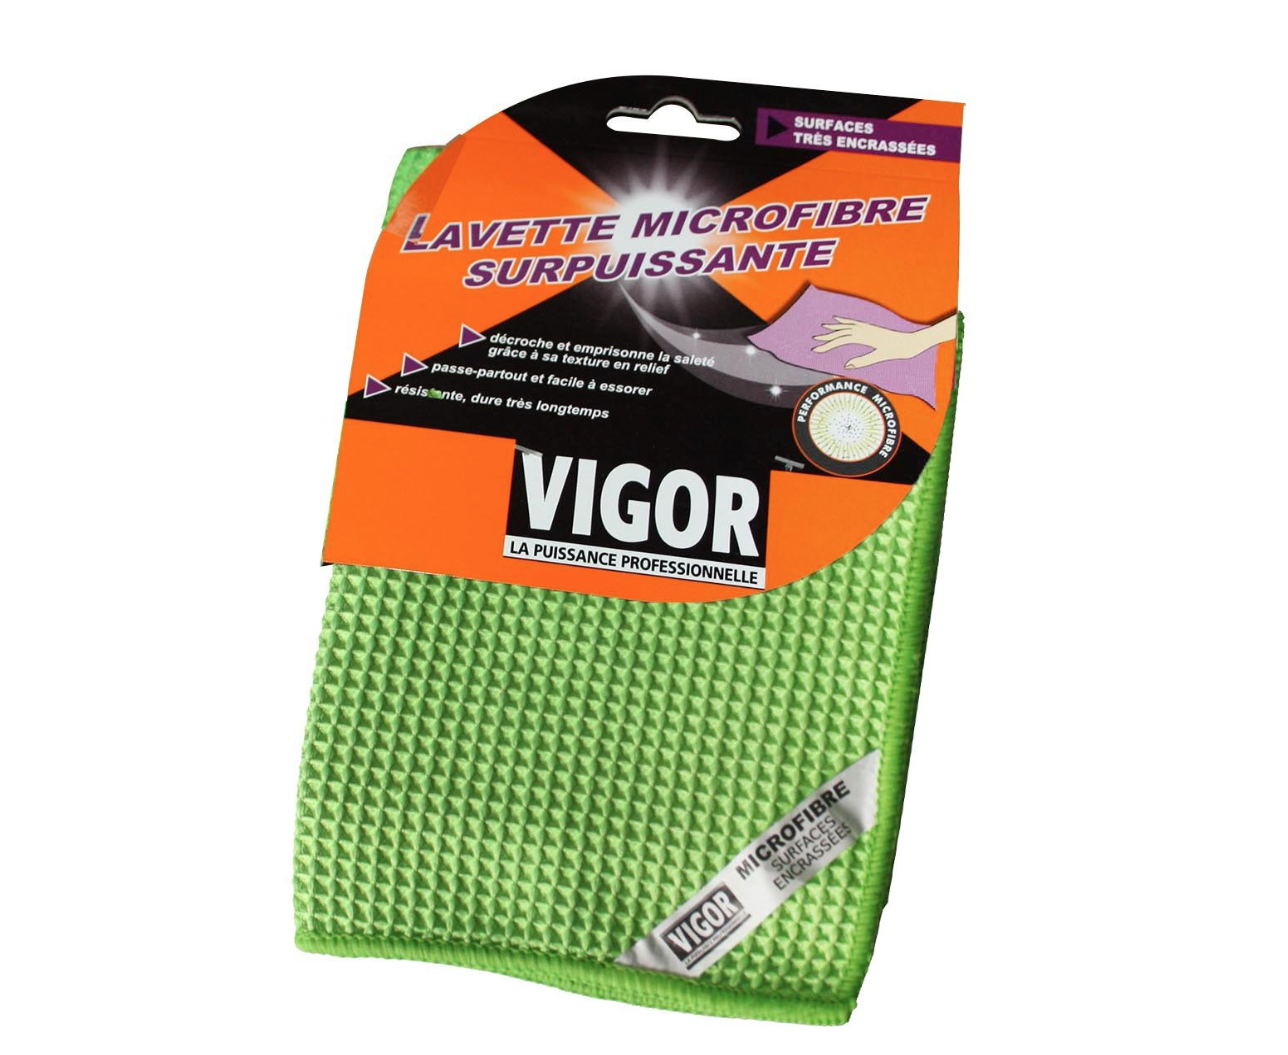 VIGOR LAVETTE MICROFIBRE GREEN SURPUISSANTE RECHARGE LAVAGE 3142762312001 MAISON HOME LOT SET PACK COMASOUND KARTEL CSK ONLINE